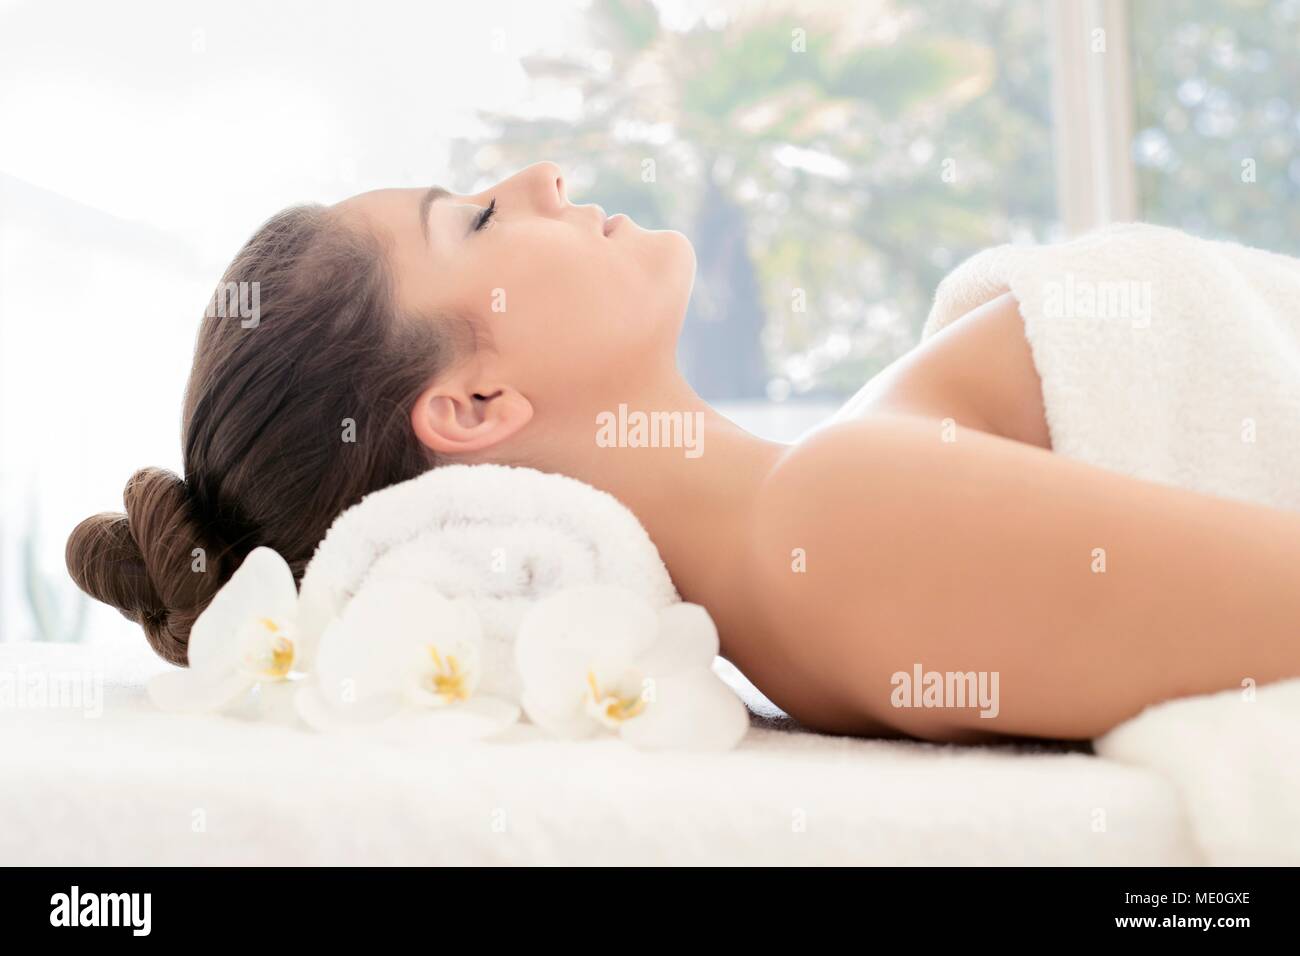 Jeune femme allongée sur une serviette dans un bain, les yeux fermés. Banque D'Images